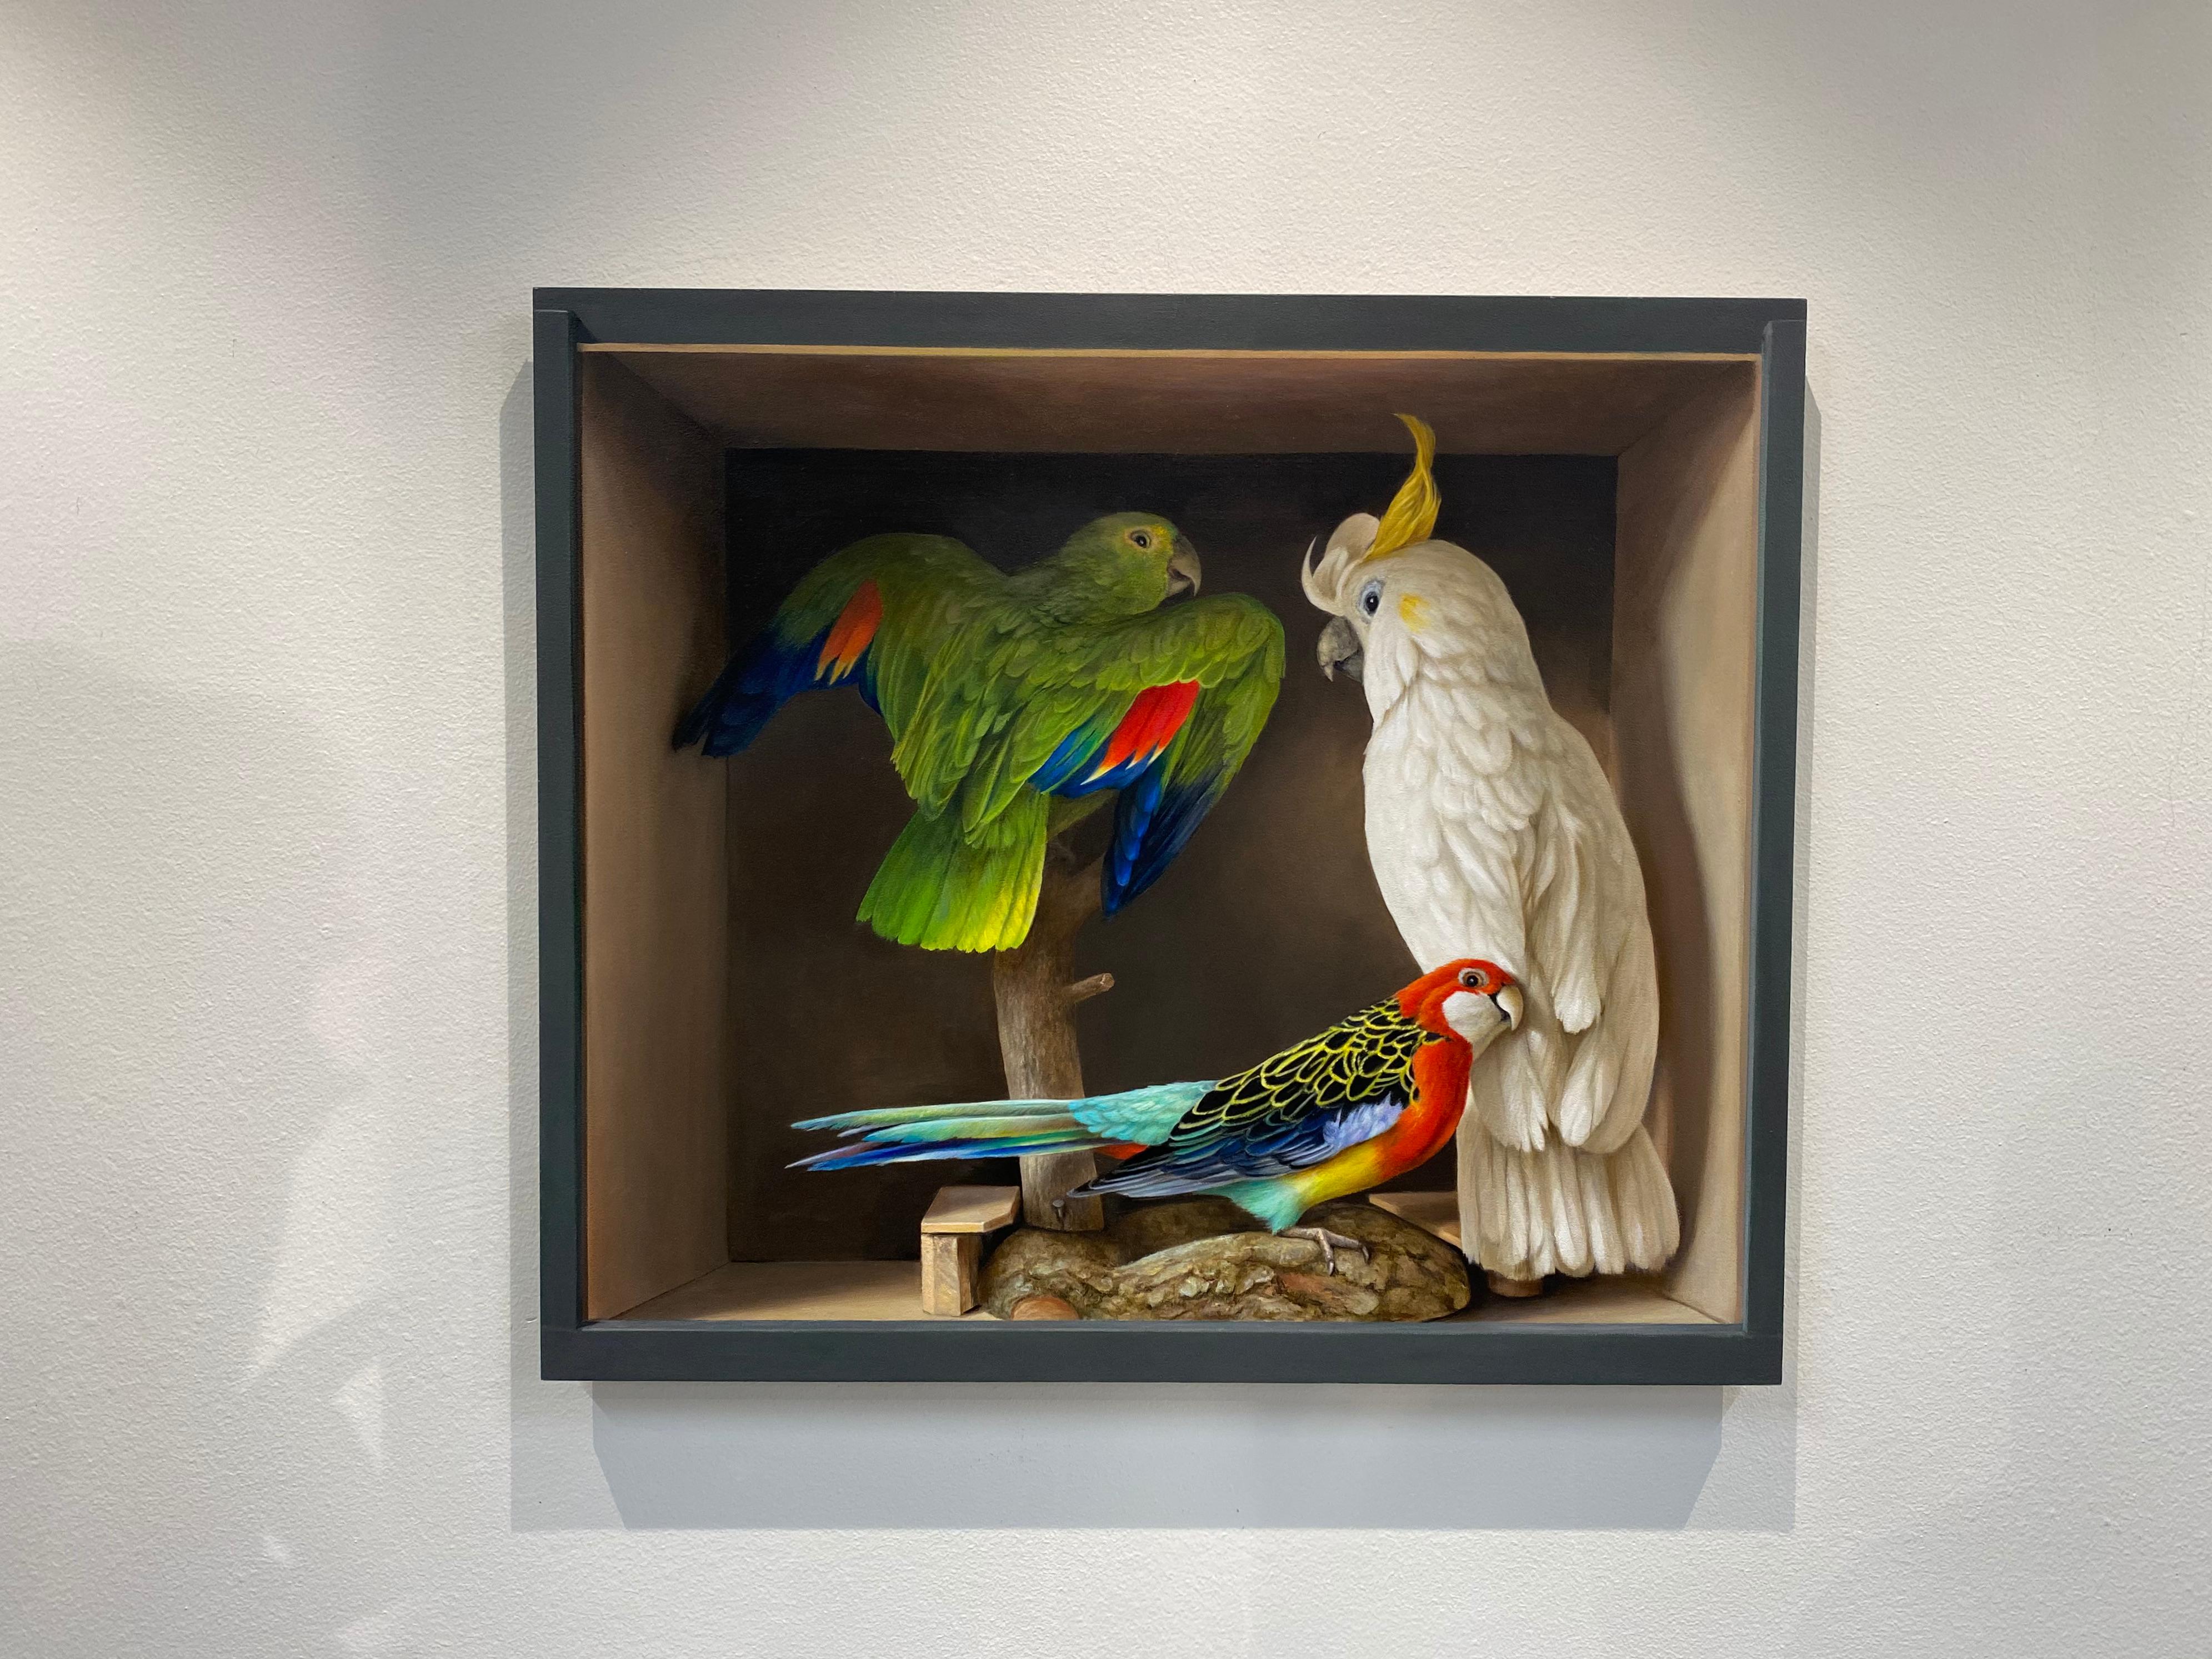 Drei Vögel – Stillleben des 21. Jahrhunderts, Gemälde einer Schachtel mit drei getrockneten Vögeln – Painting von Bart Koning